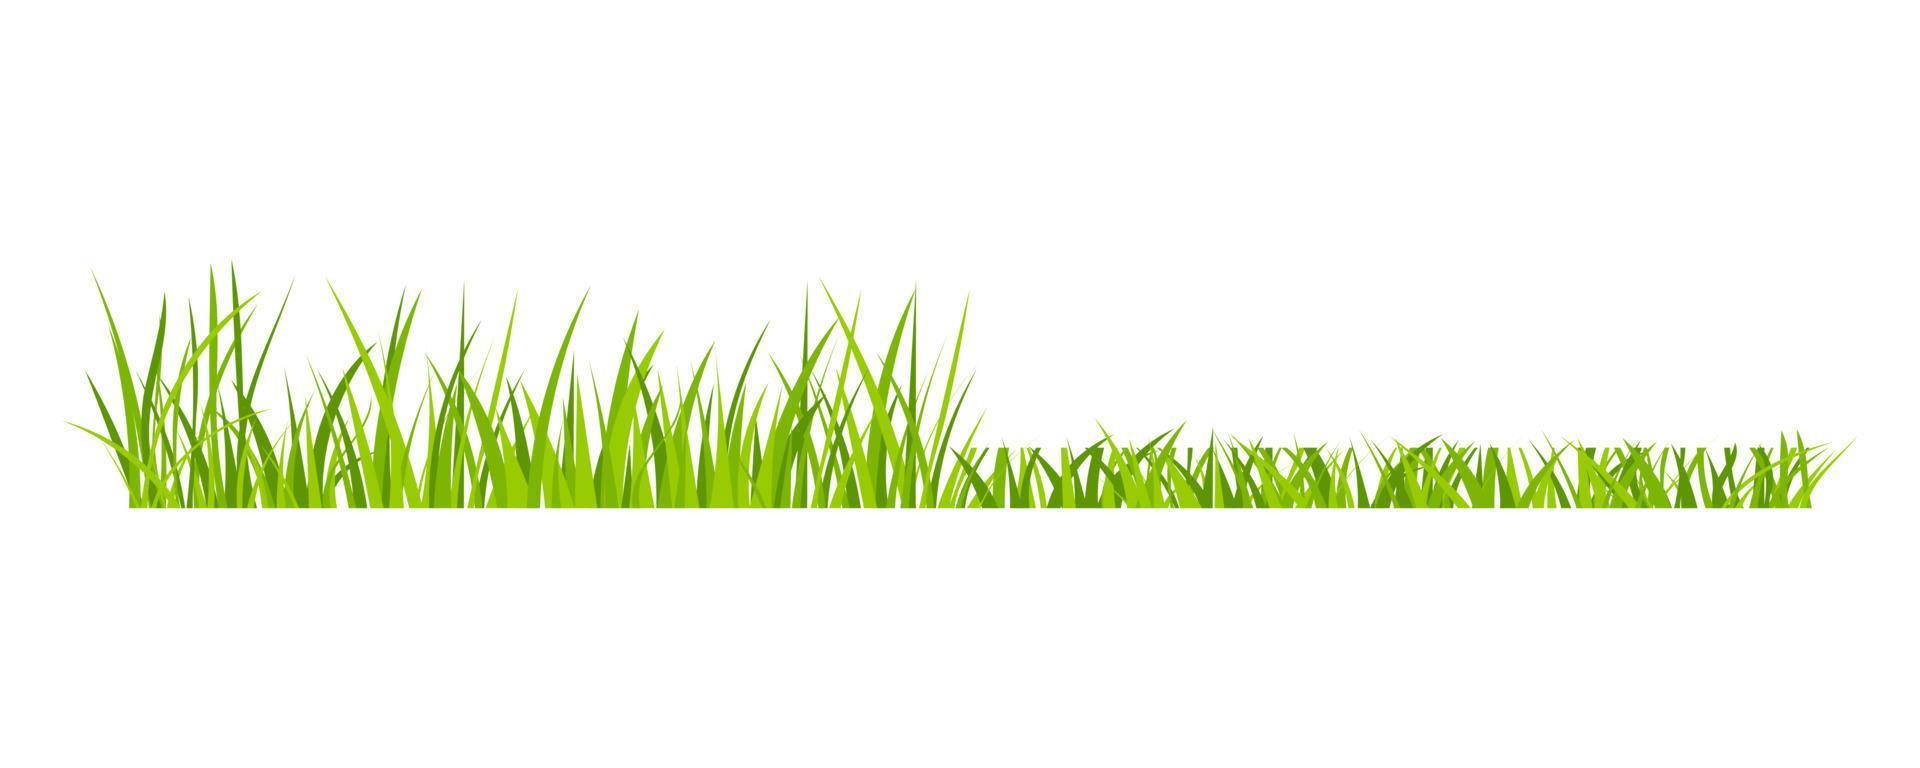 grön gräsmark gräsmatta fältgräns platt stil design vektorillustration isolerad på vit bakgrund. vektor